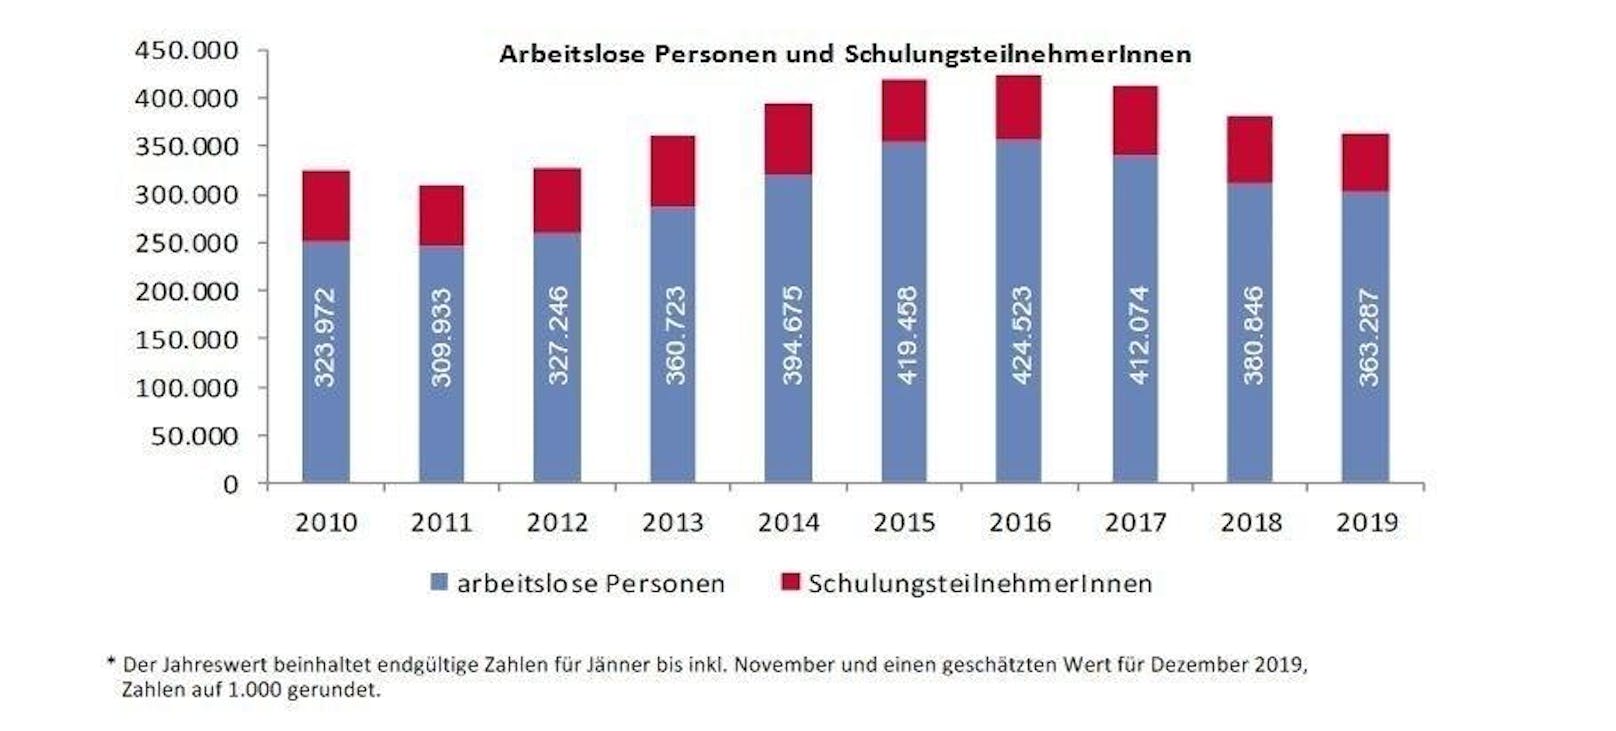 Die Arbeitslosenzahlen in Österreich sinken seit Frühjahr 2017, zuvor waren sie fünf Jahre lang gestiegen.